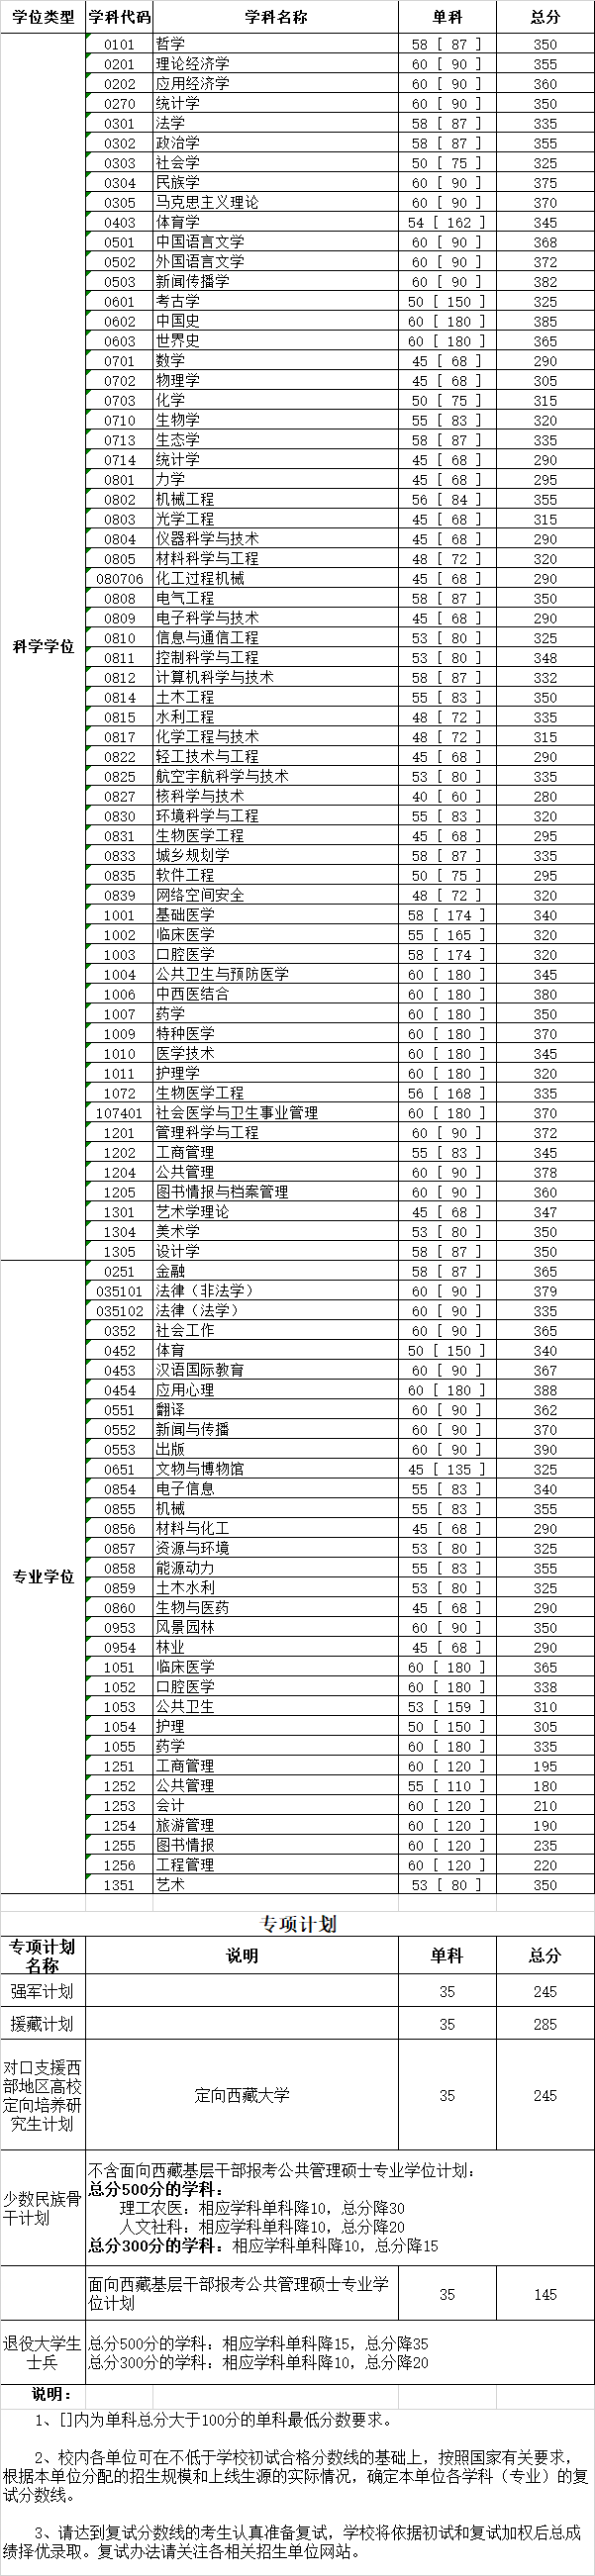 四川大学2020年考研复试分数线